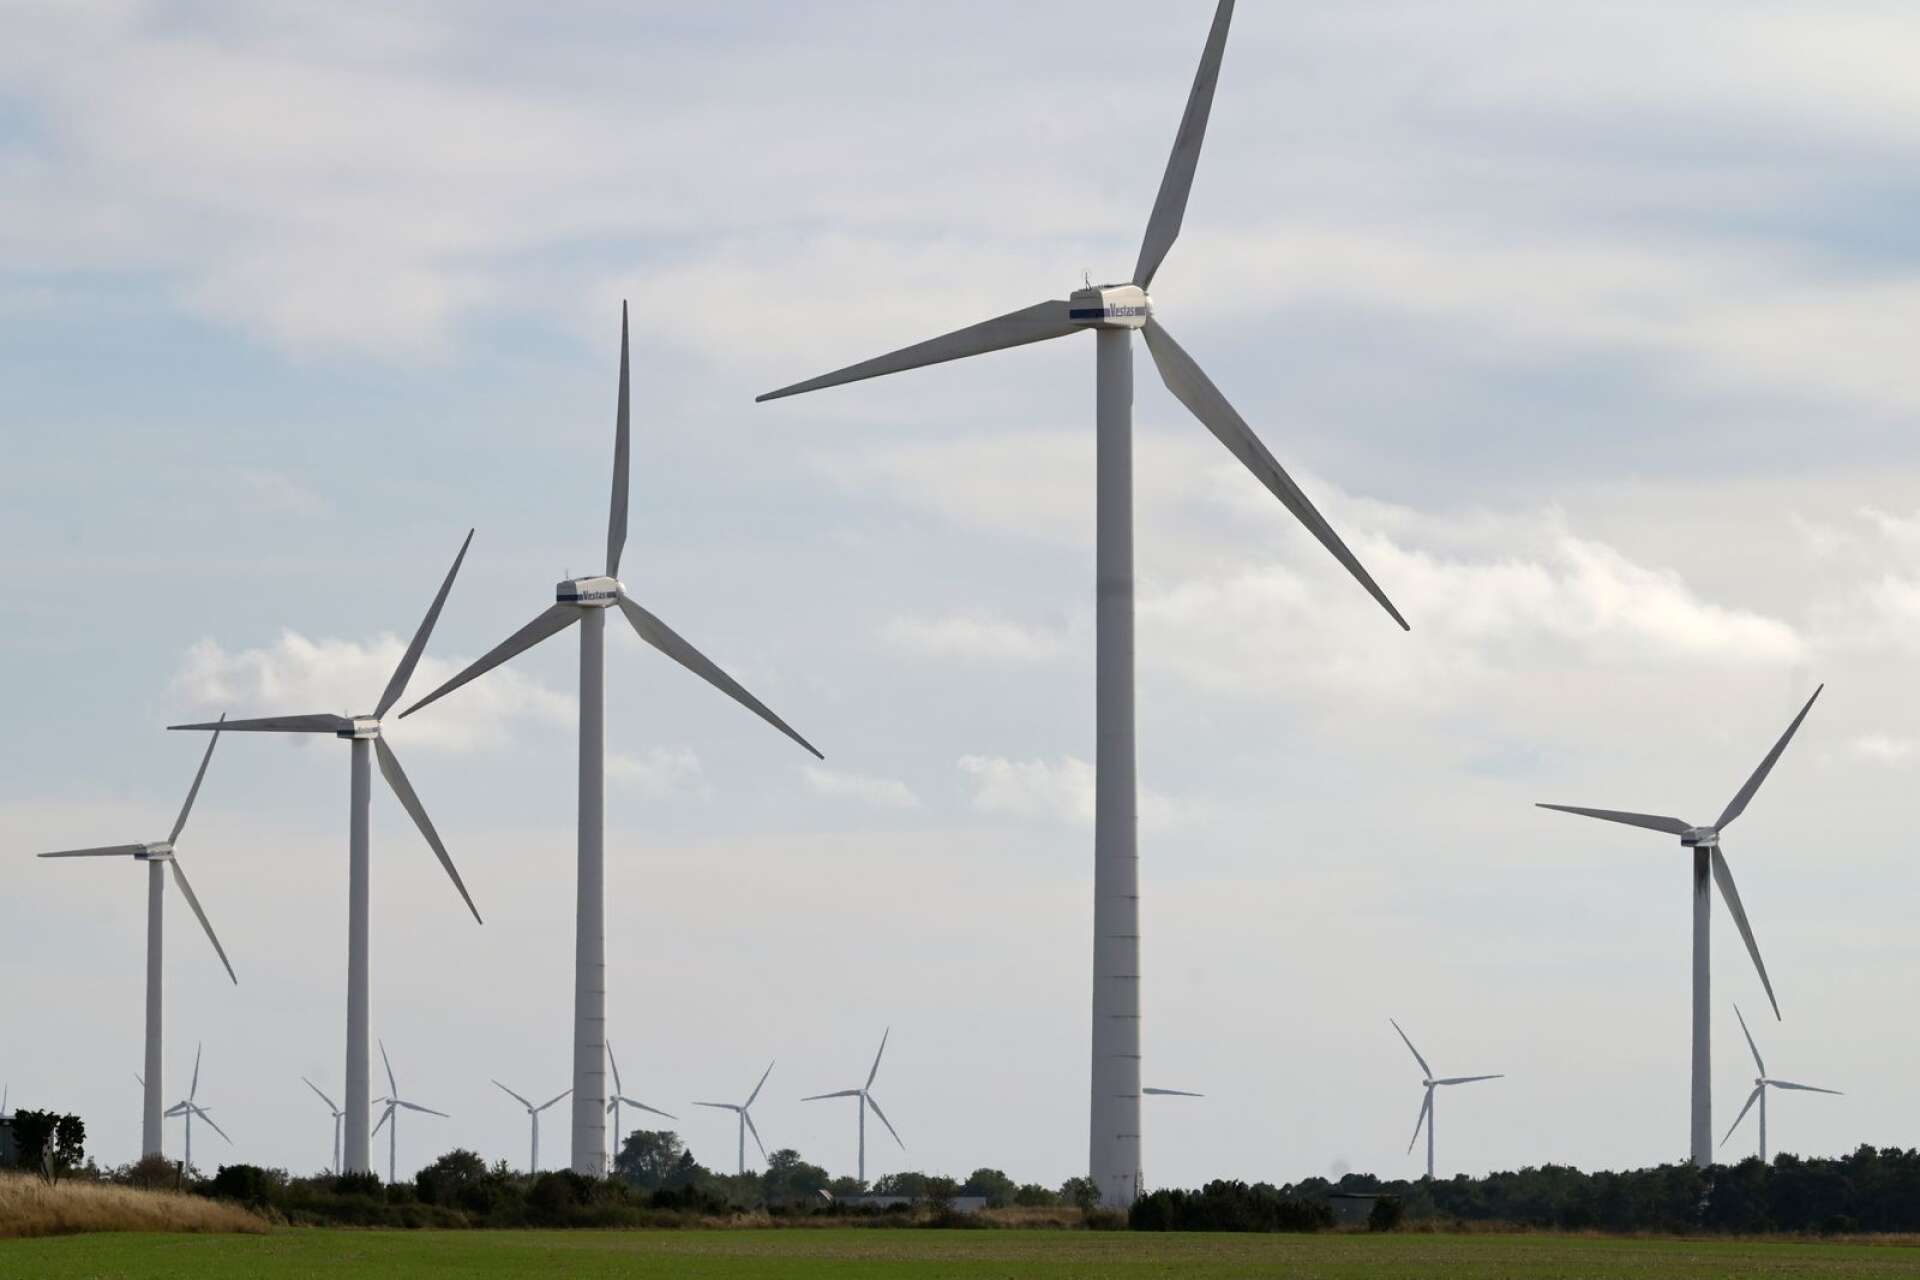 Behåll det lokala vetot för vindkraft och låt lokalpolitikerna avgöra när och var vindkraft ska etableras, menar debattören. 